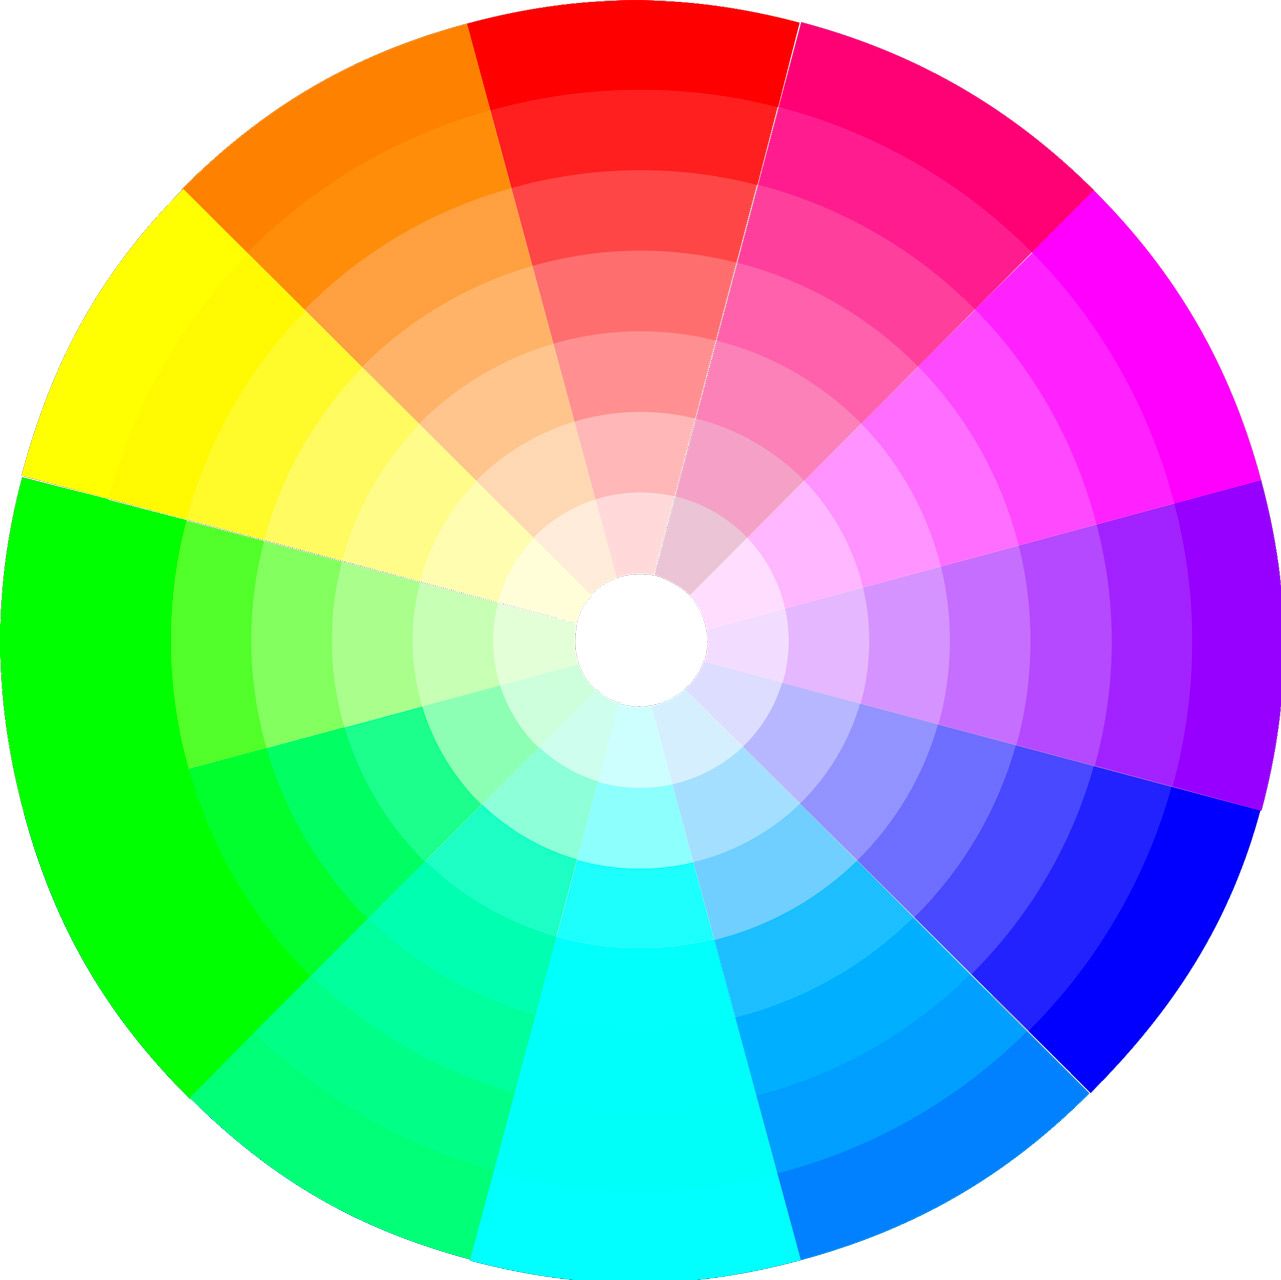 Dale A Tus Fotografías Un Mismo Estilo Utilizando Paletas De Colores En Lightroom